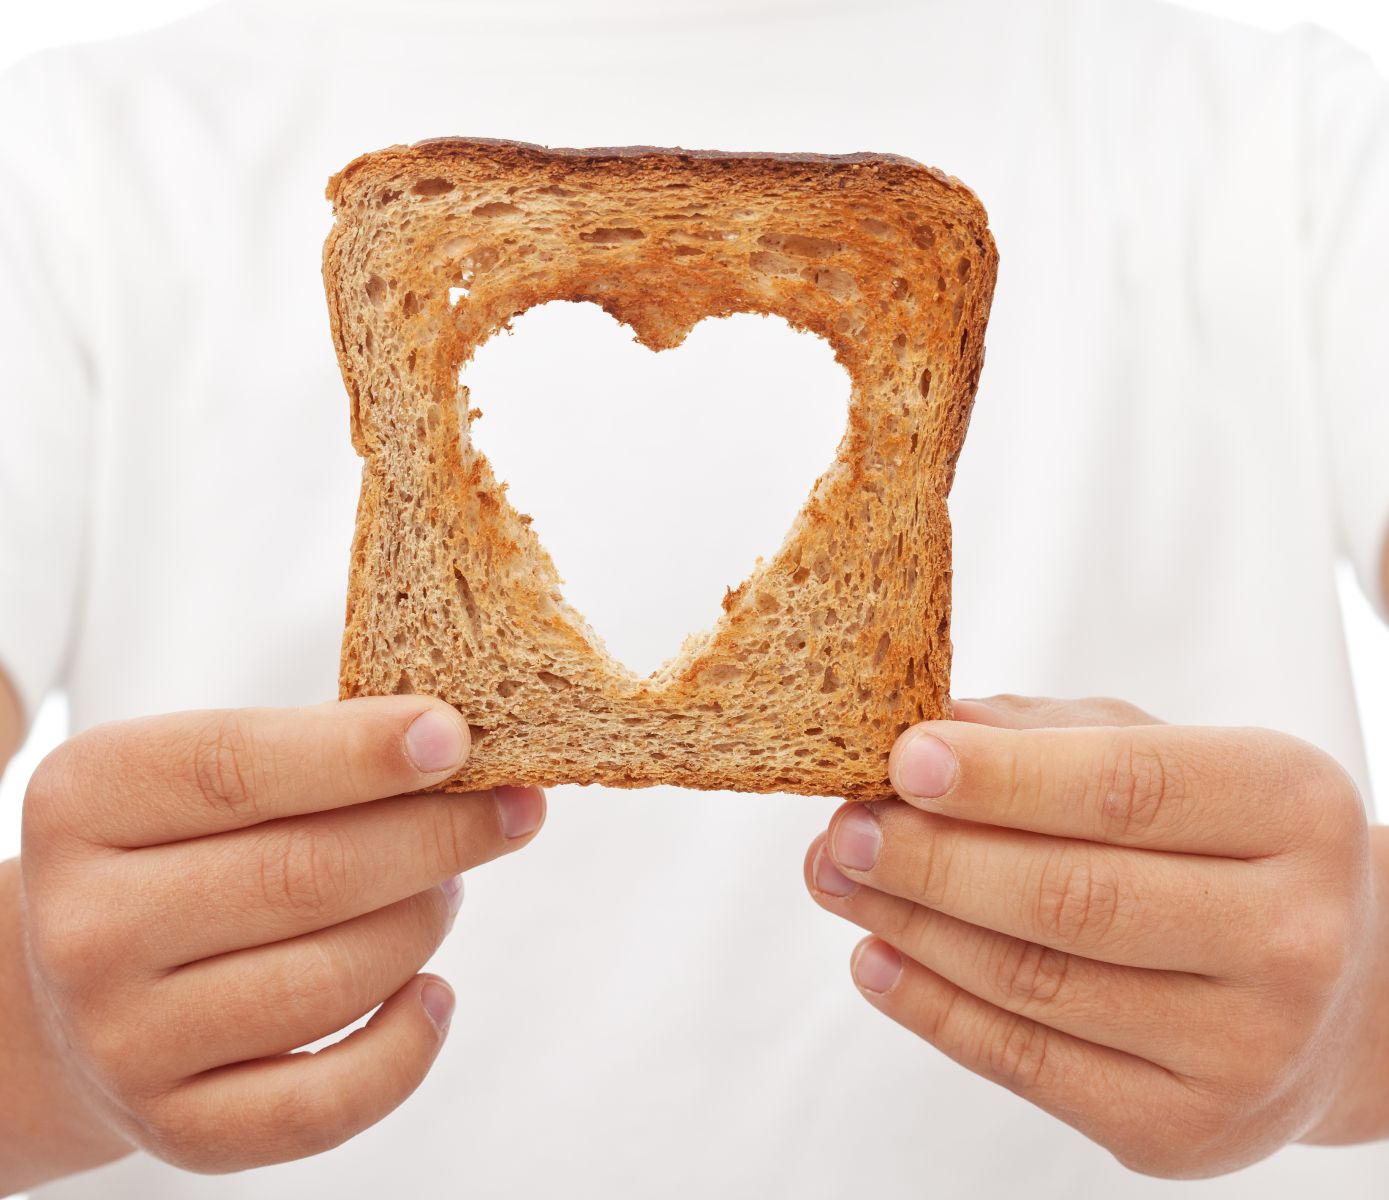 Acercamiento a las manos de un chef soteniendo un pan con recorte interno en forma de corazón